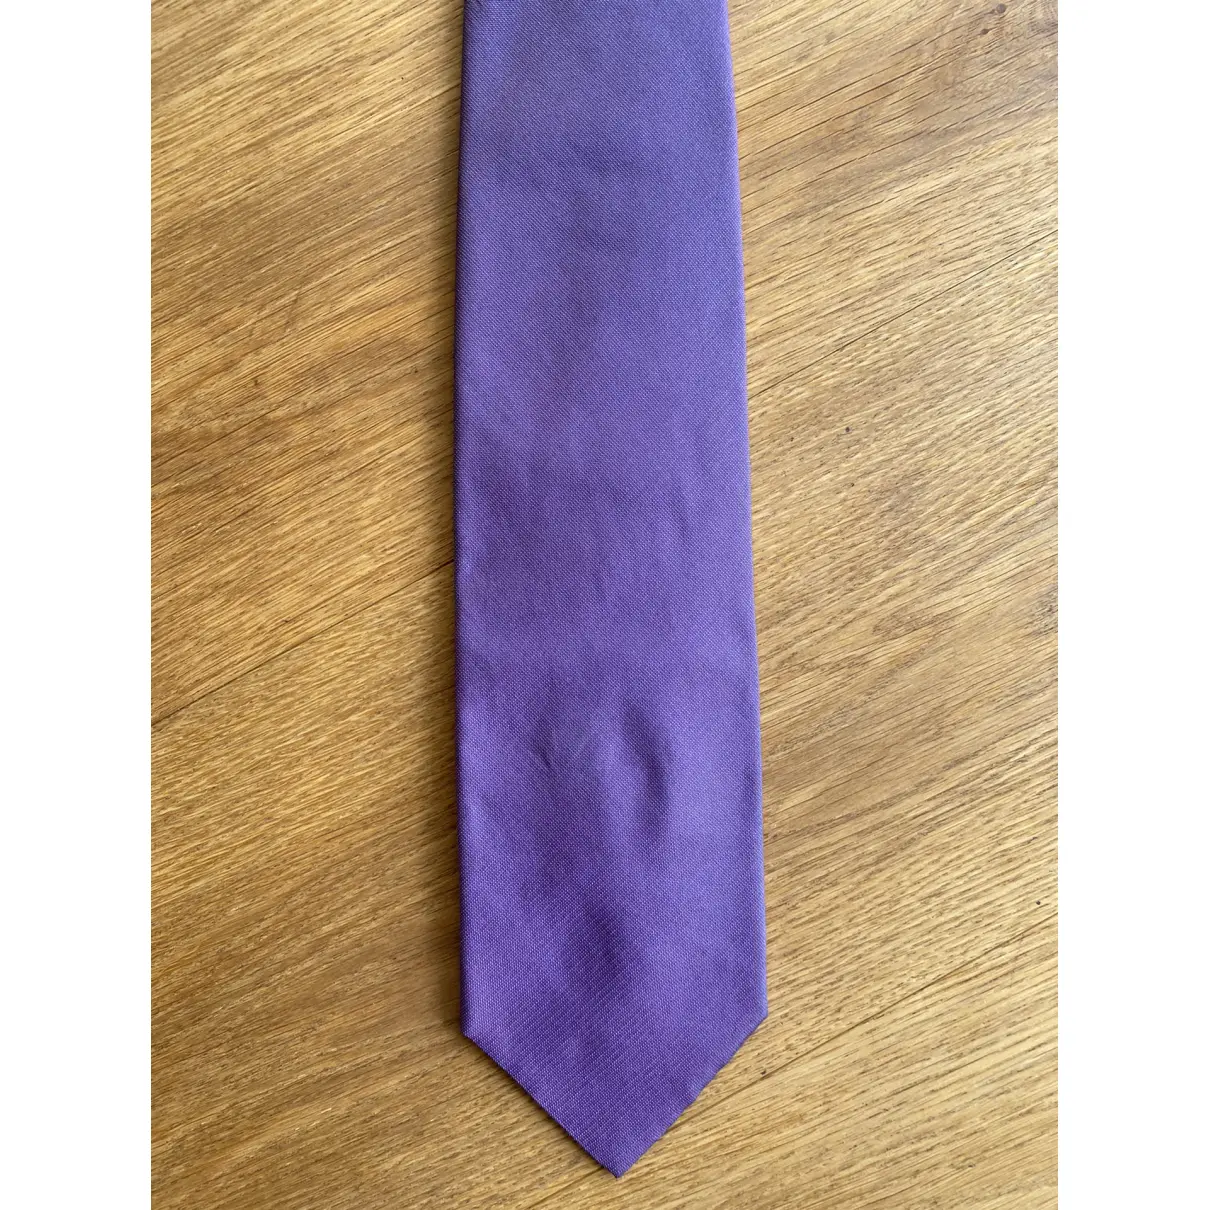 Buy Toni Gard Silk tie online